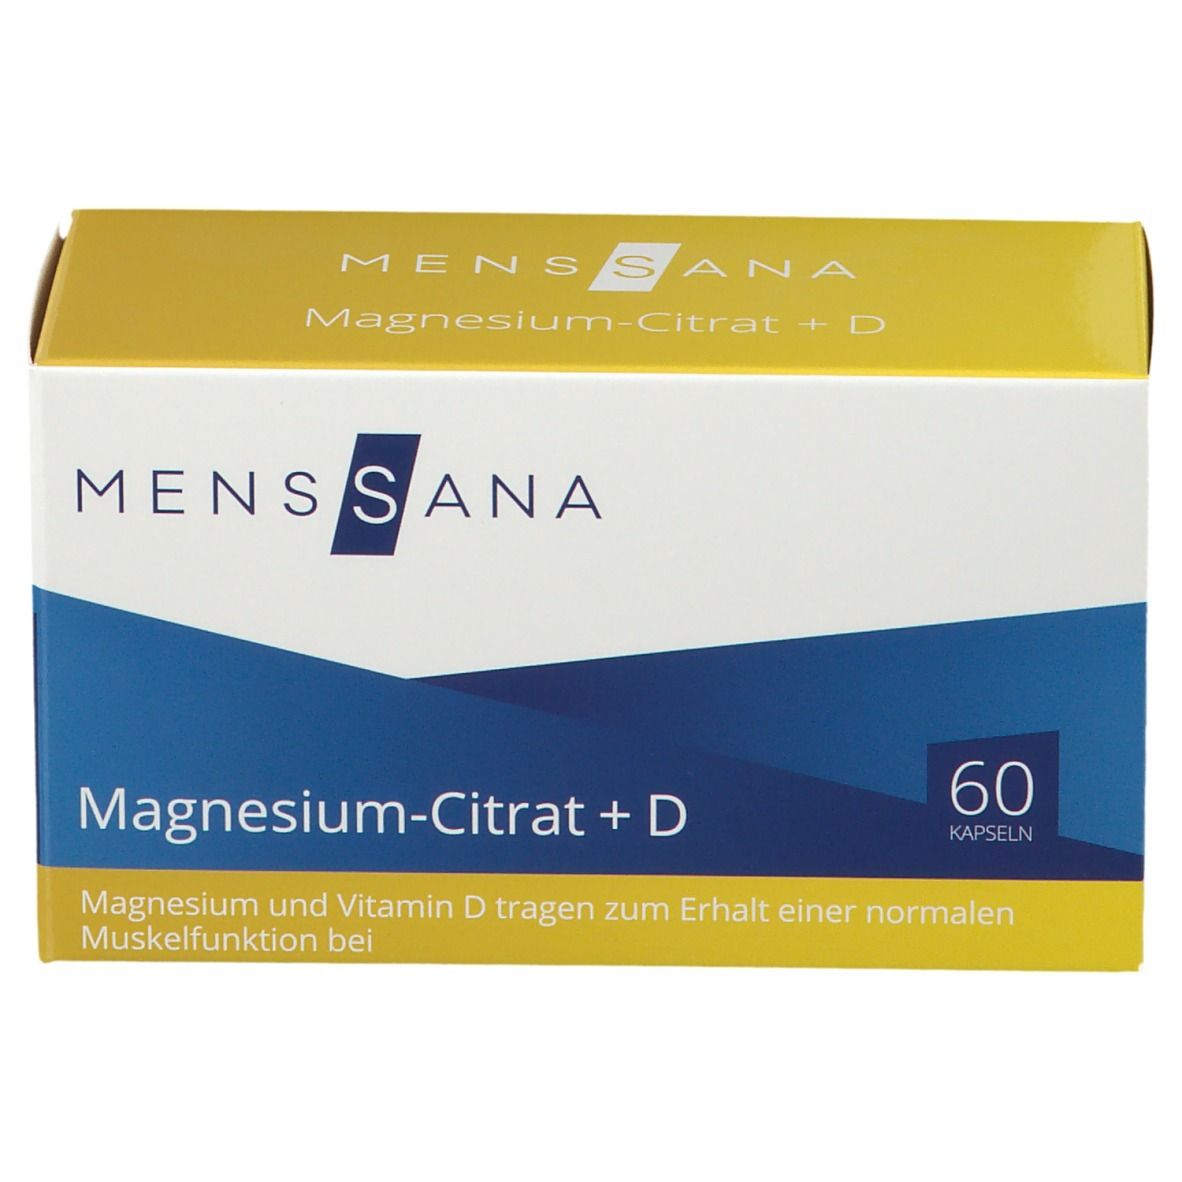 MENSSANA Magnesium-Citrat +D